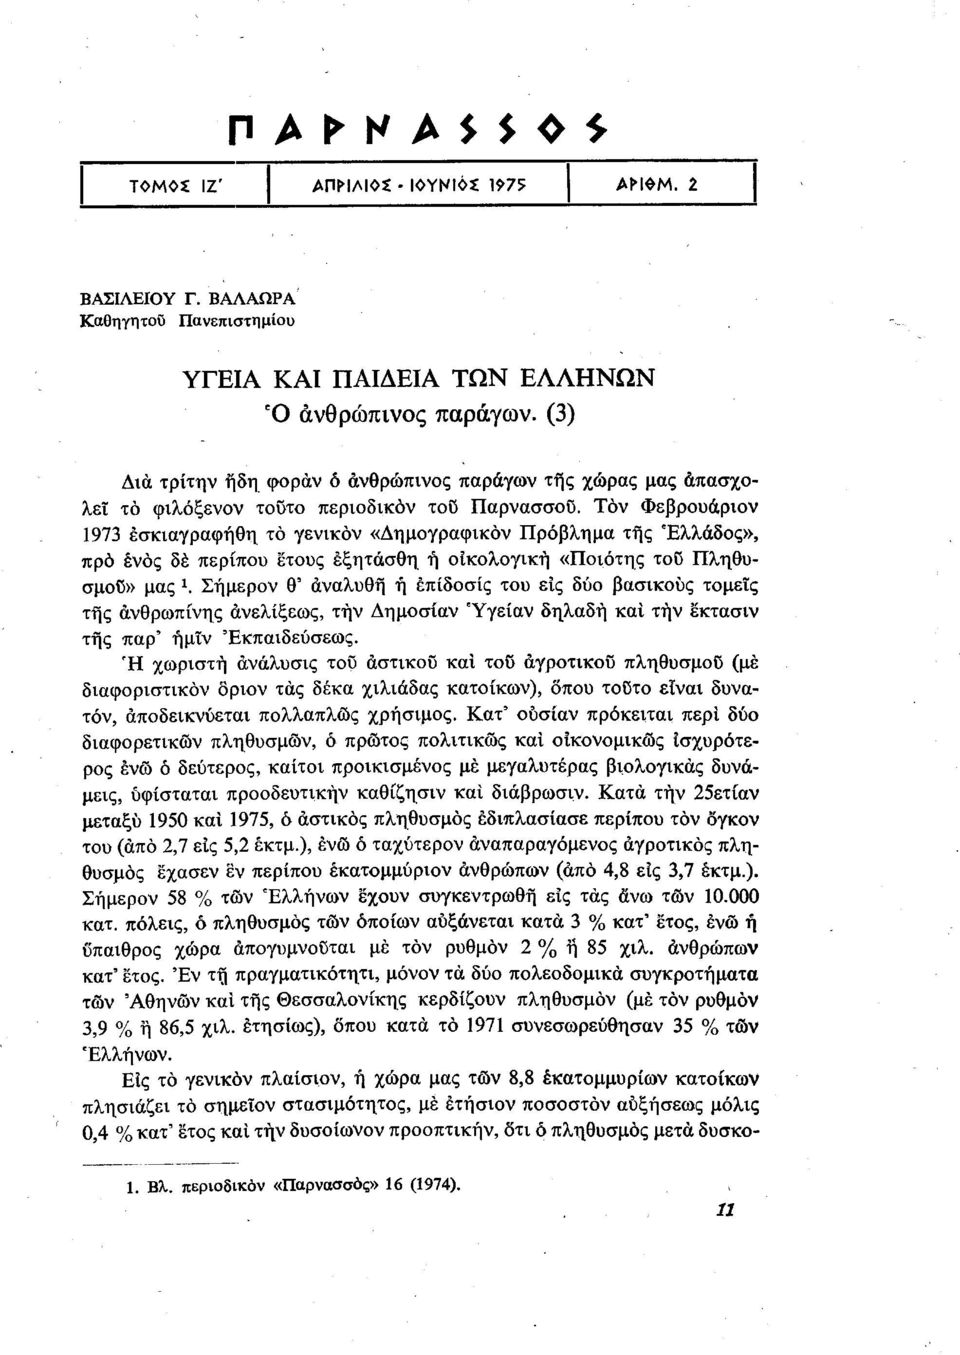 Τον Φεβρουάριον 1973 έσκιαγραφήθη το γενικον «Δημογραφικόν Πρόβλημα της Ελλάδος», προ ενός δέ περίπου έτους έξητάσθη ή οικολογική «Ποιότης του Πληθυσμού» μας Χ.